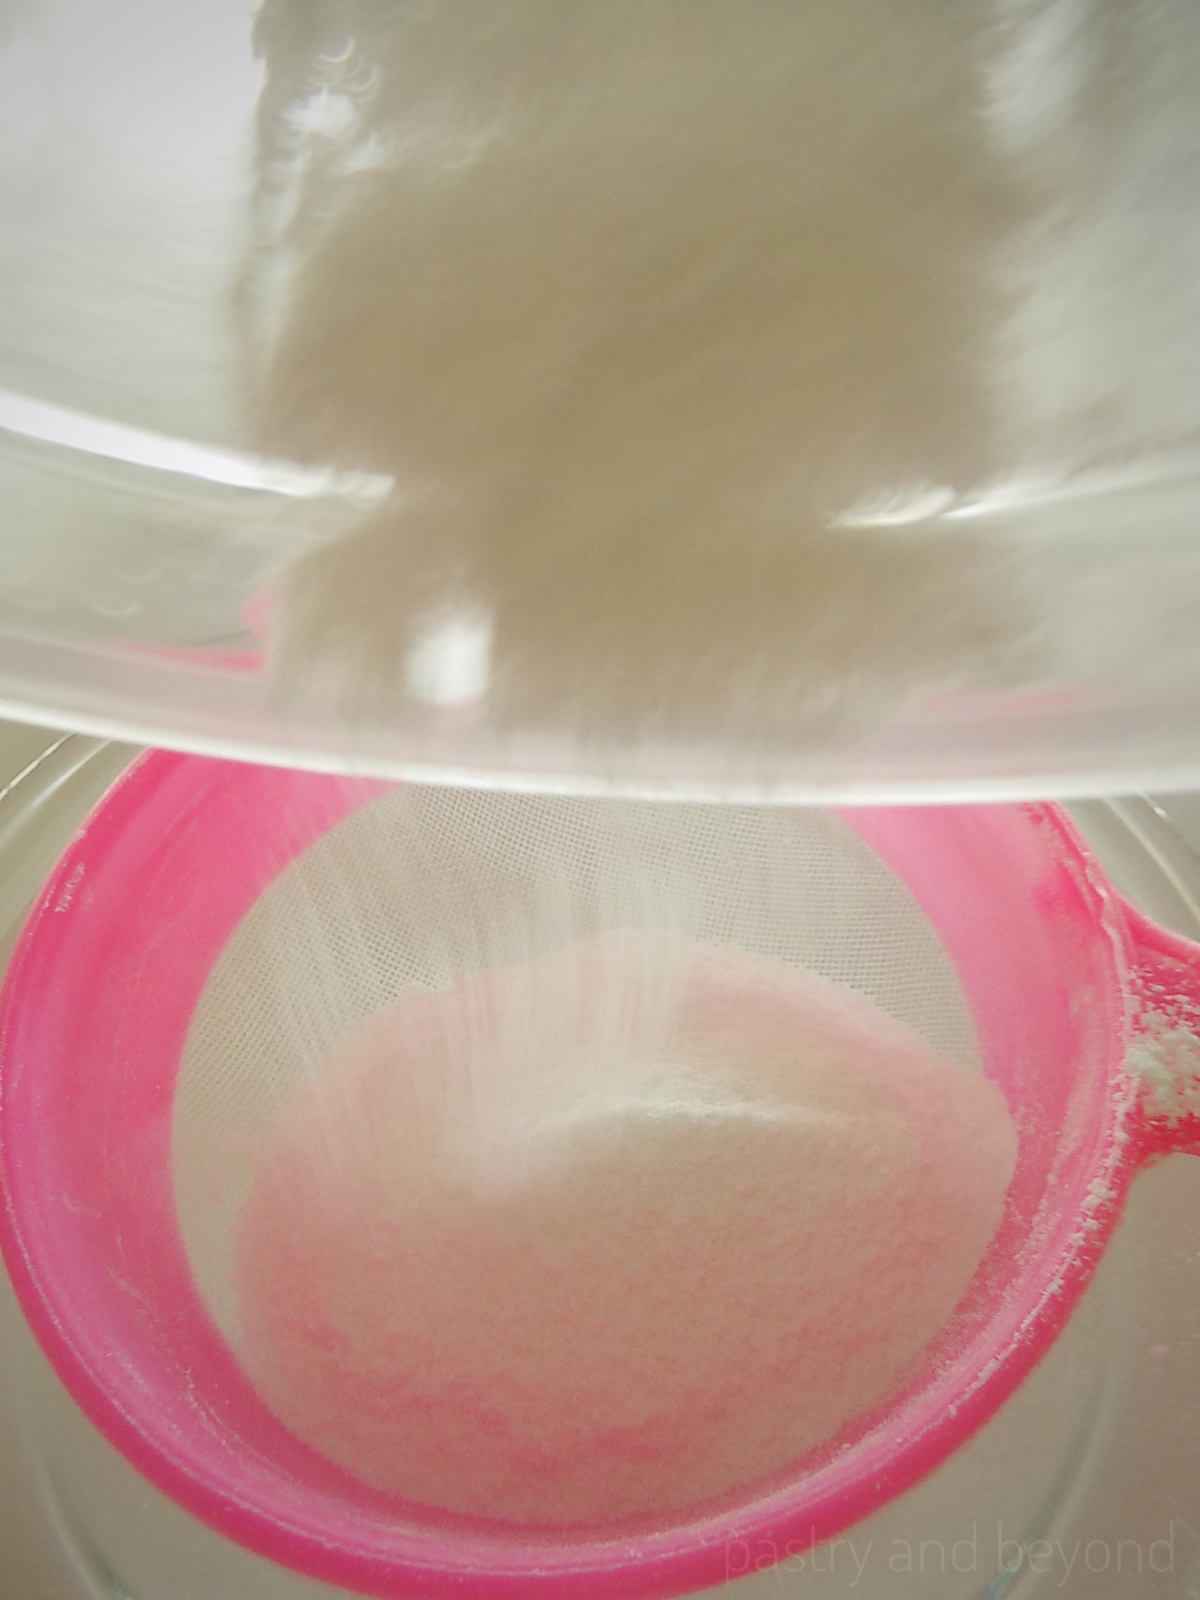 Sifting homemade powder sugar. 